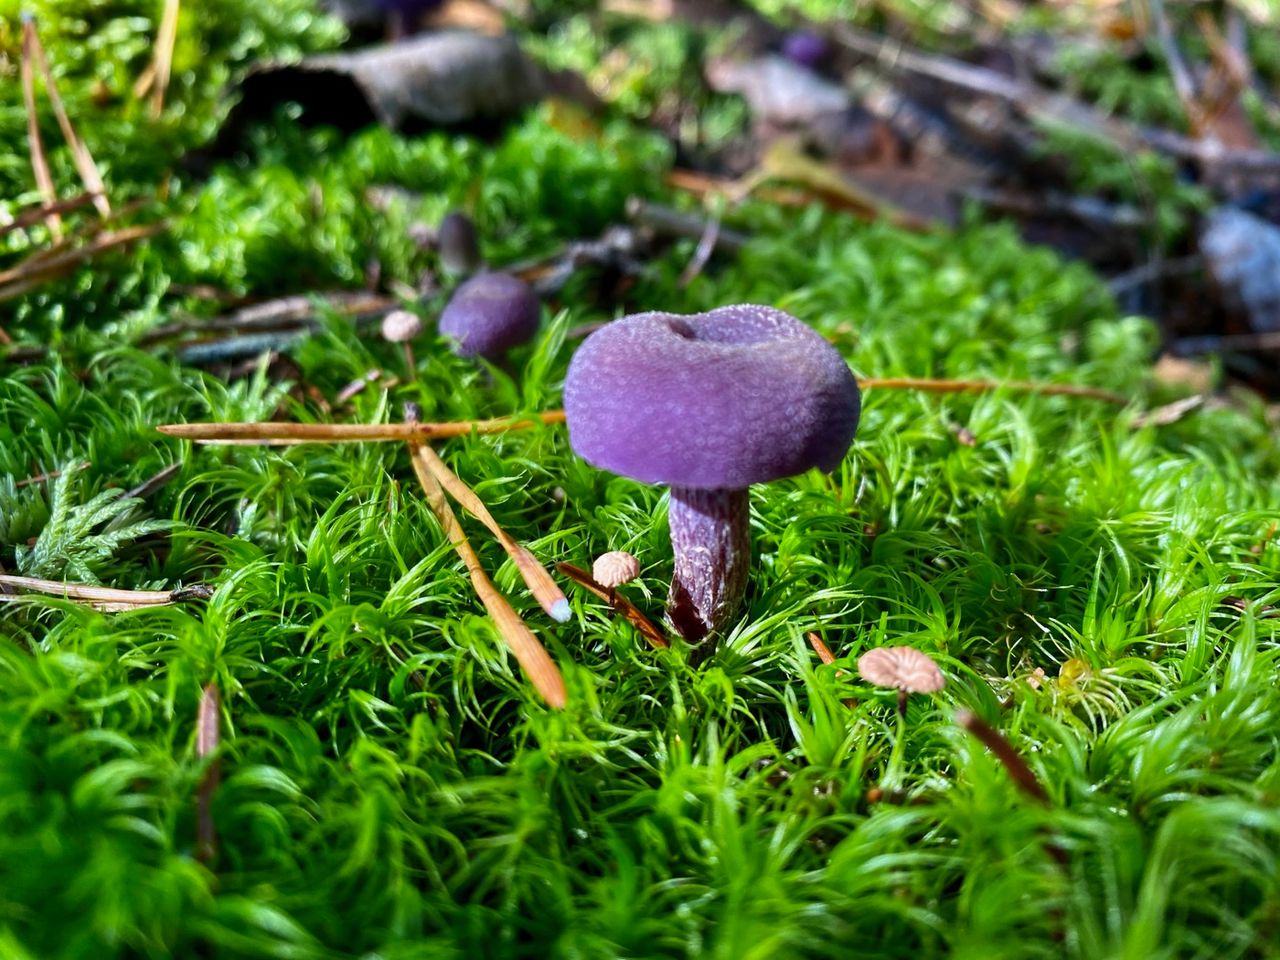 Purple mushroom in green moss.